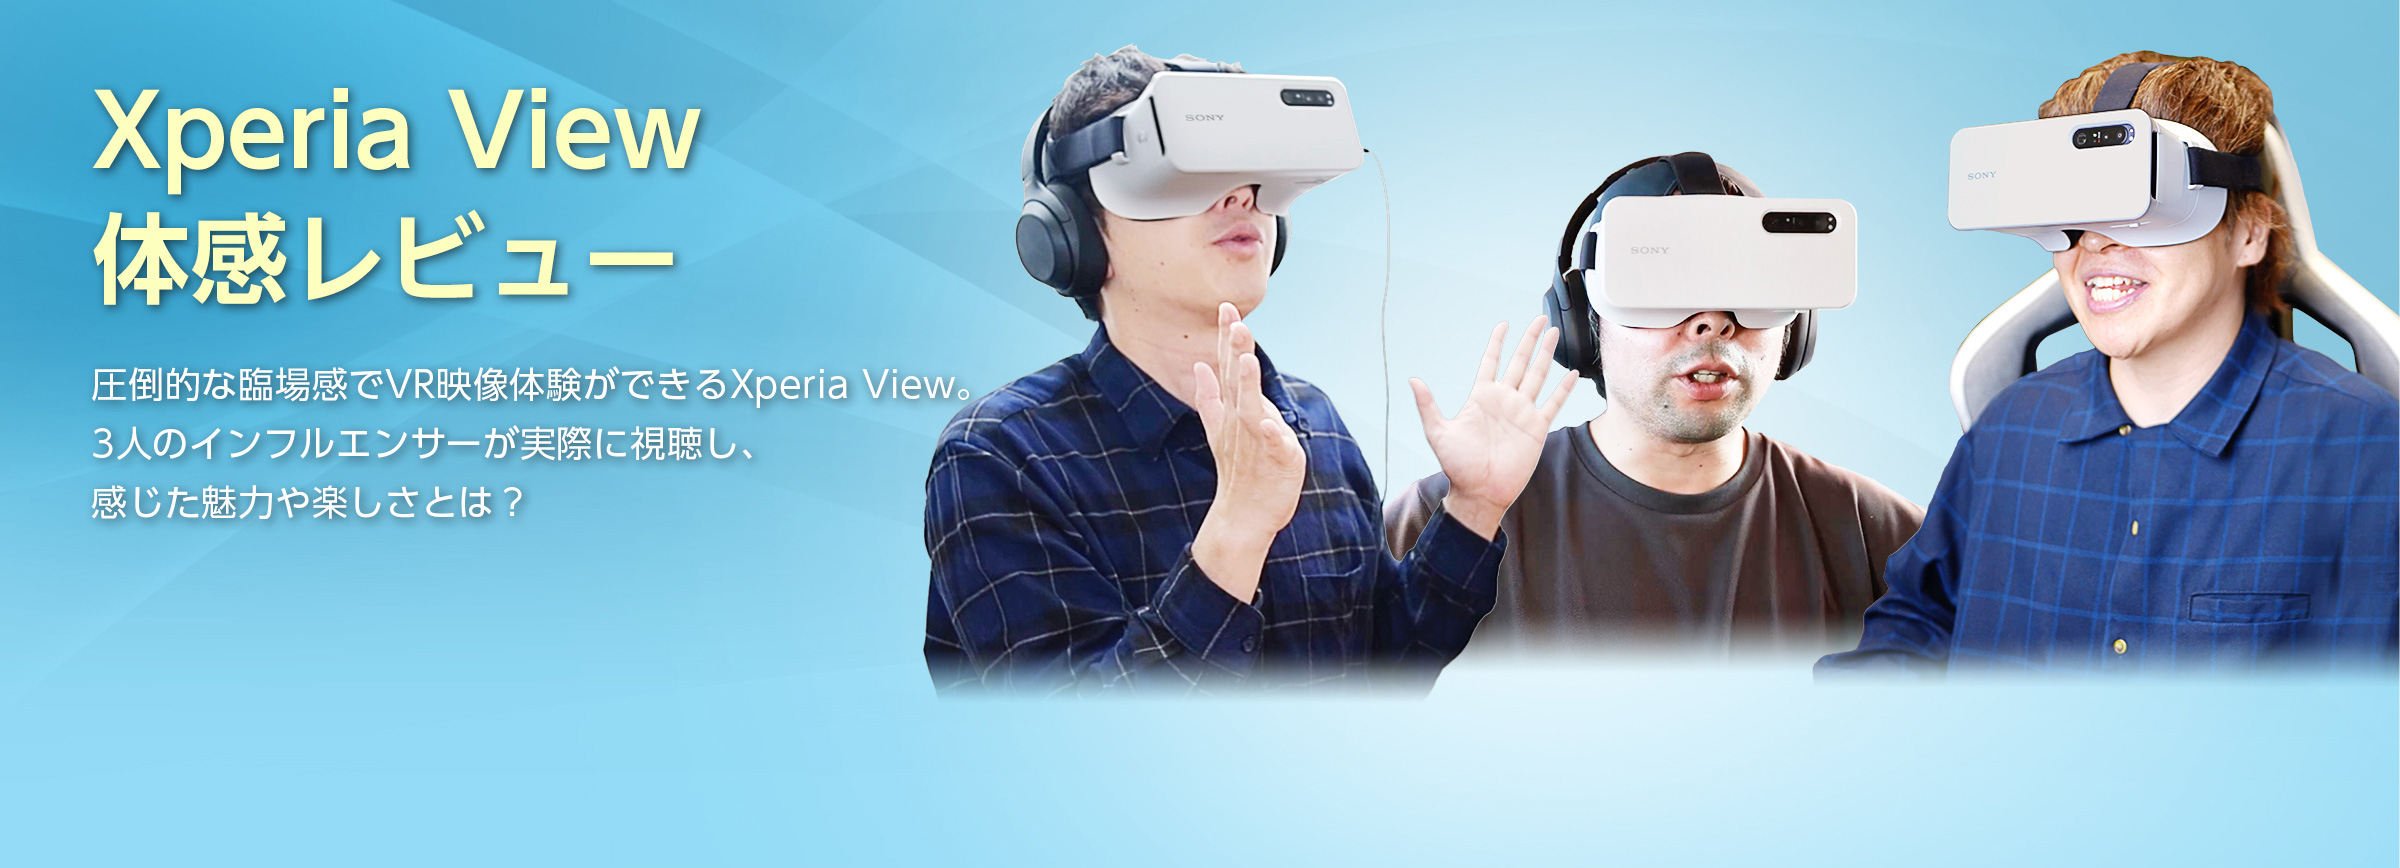 Xperia View 体感レビュー 圧倒的な臨場感でVR映像体験ができるXperia View。3人のインフルエンサーが実際に視聴し、感じた魅力や楽しさとは？